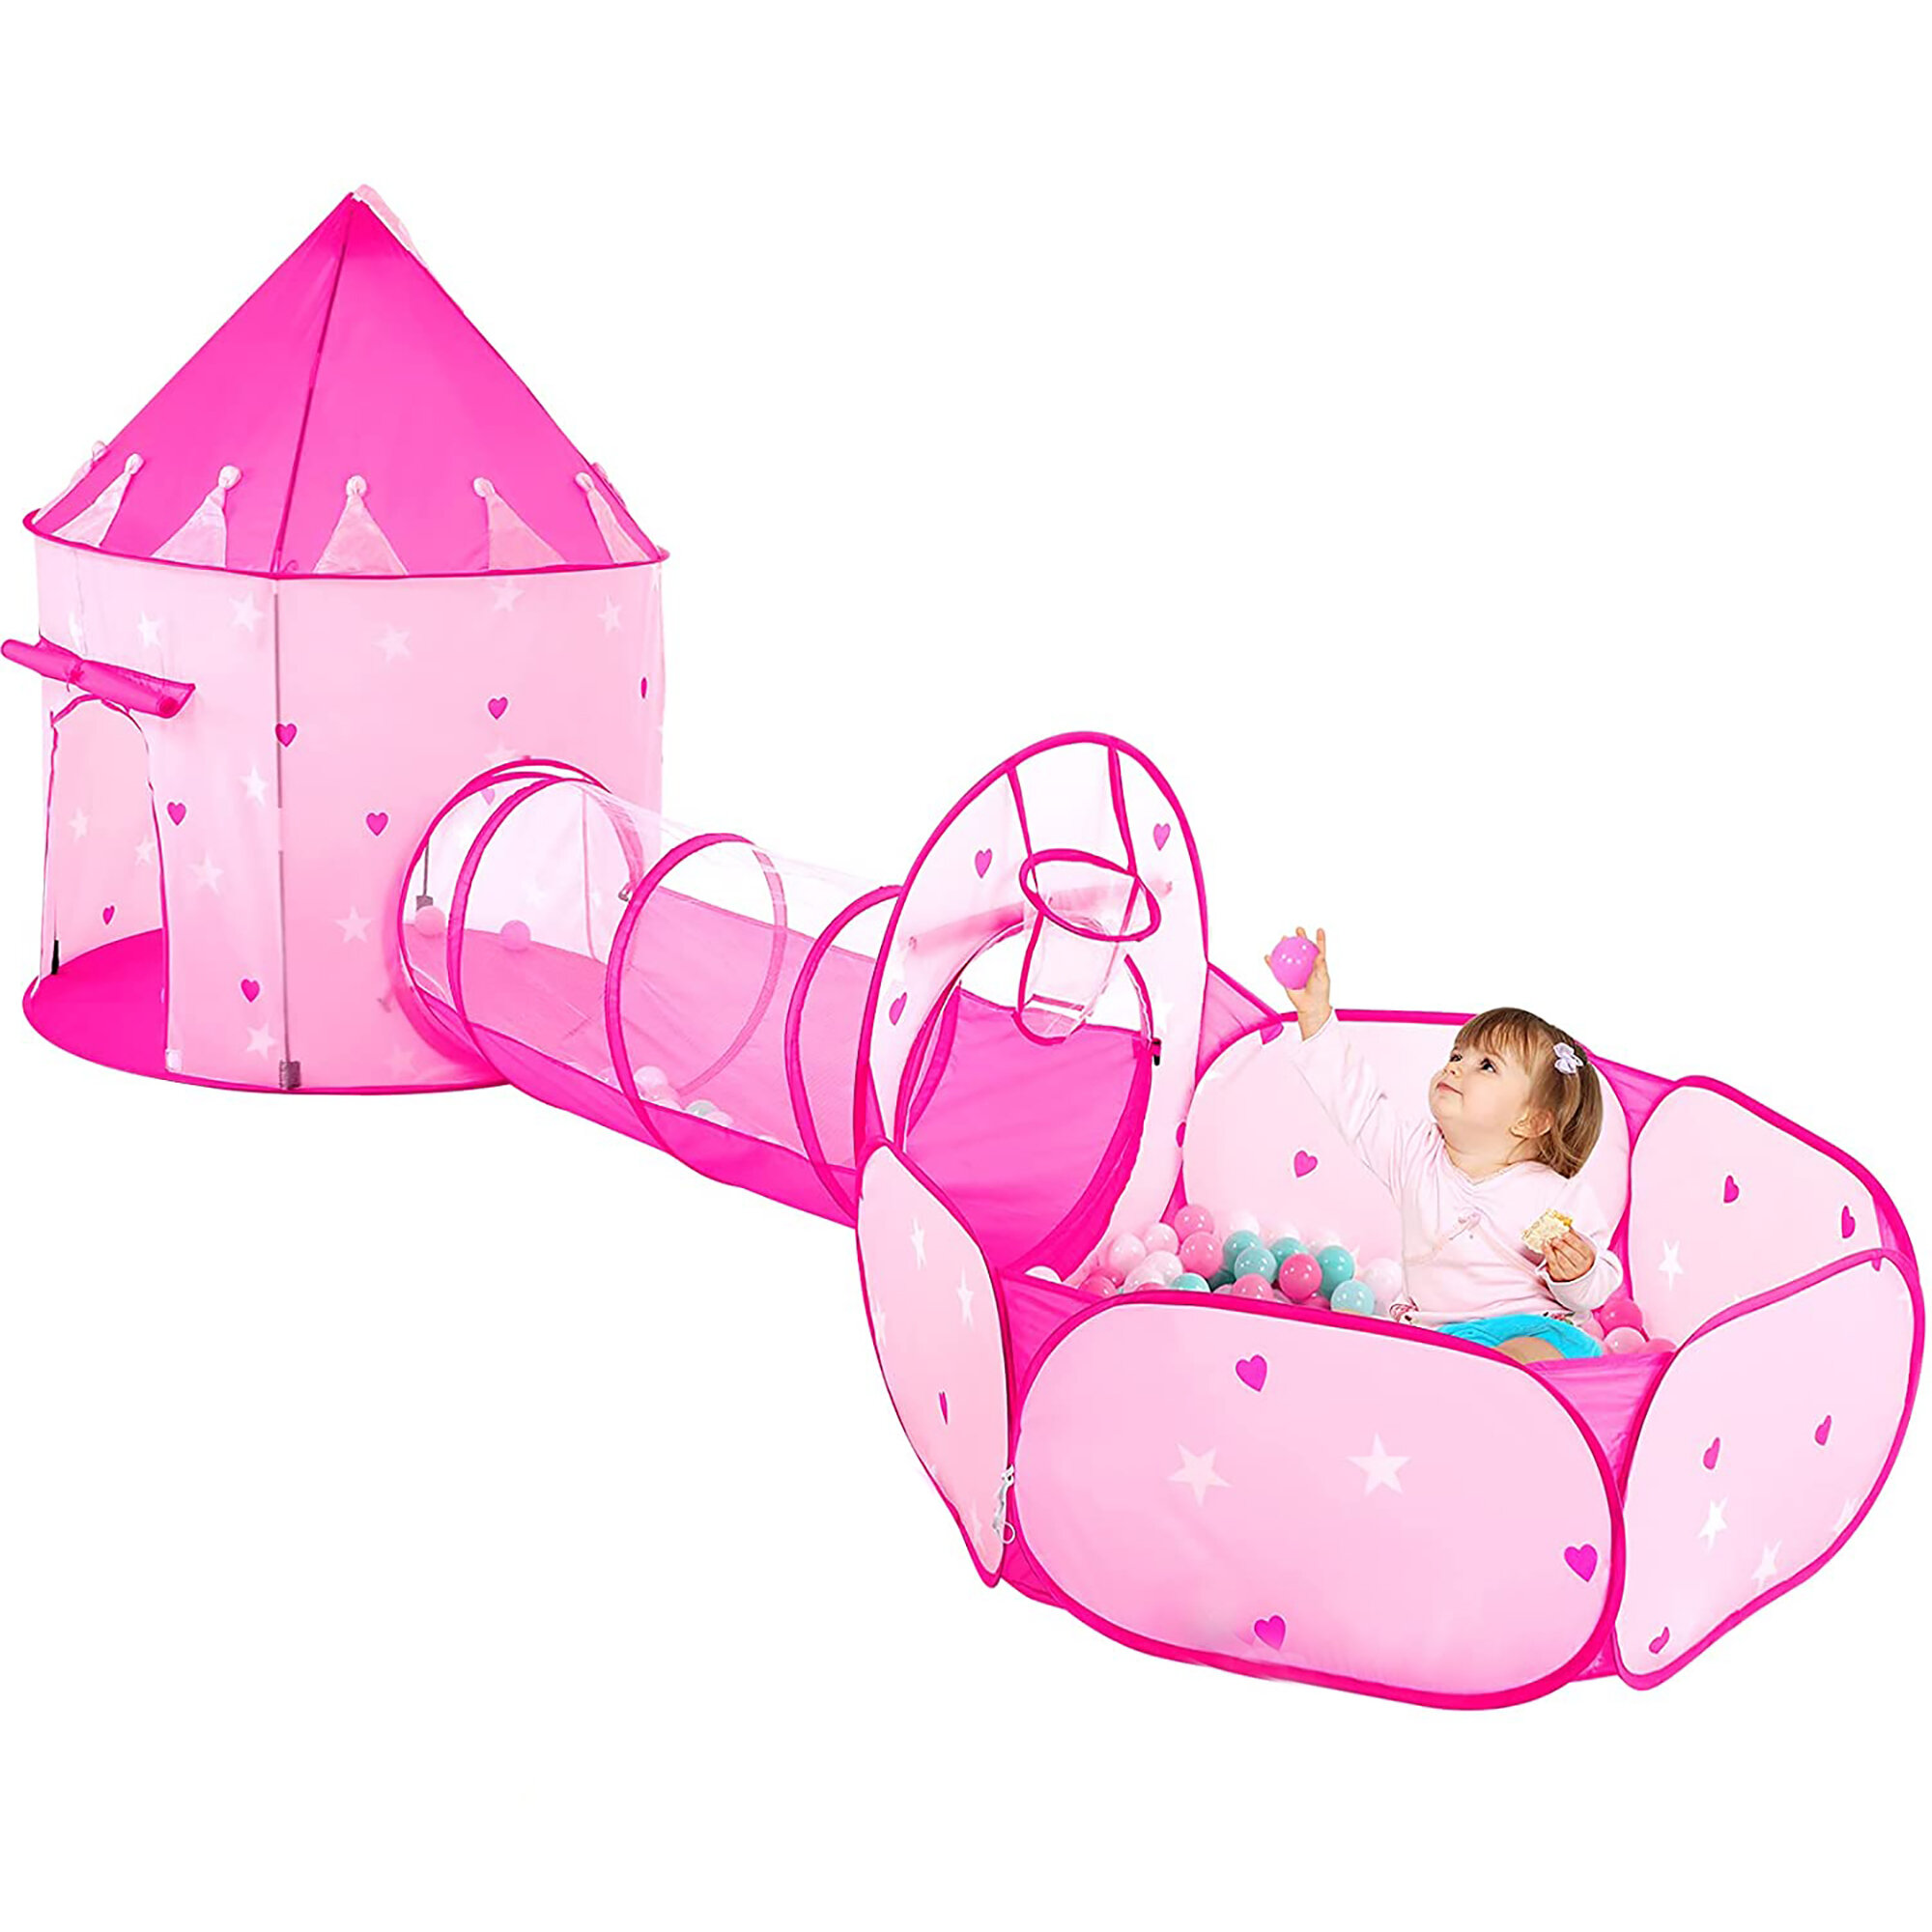 Balle Pit Play House Tente Tunnel 3 en 1 aire de jeux pour enfants  Playhouse avec sac de rangement à glissière -ROE